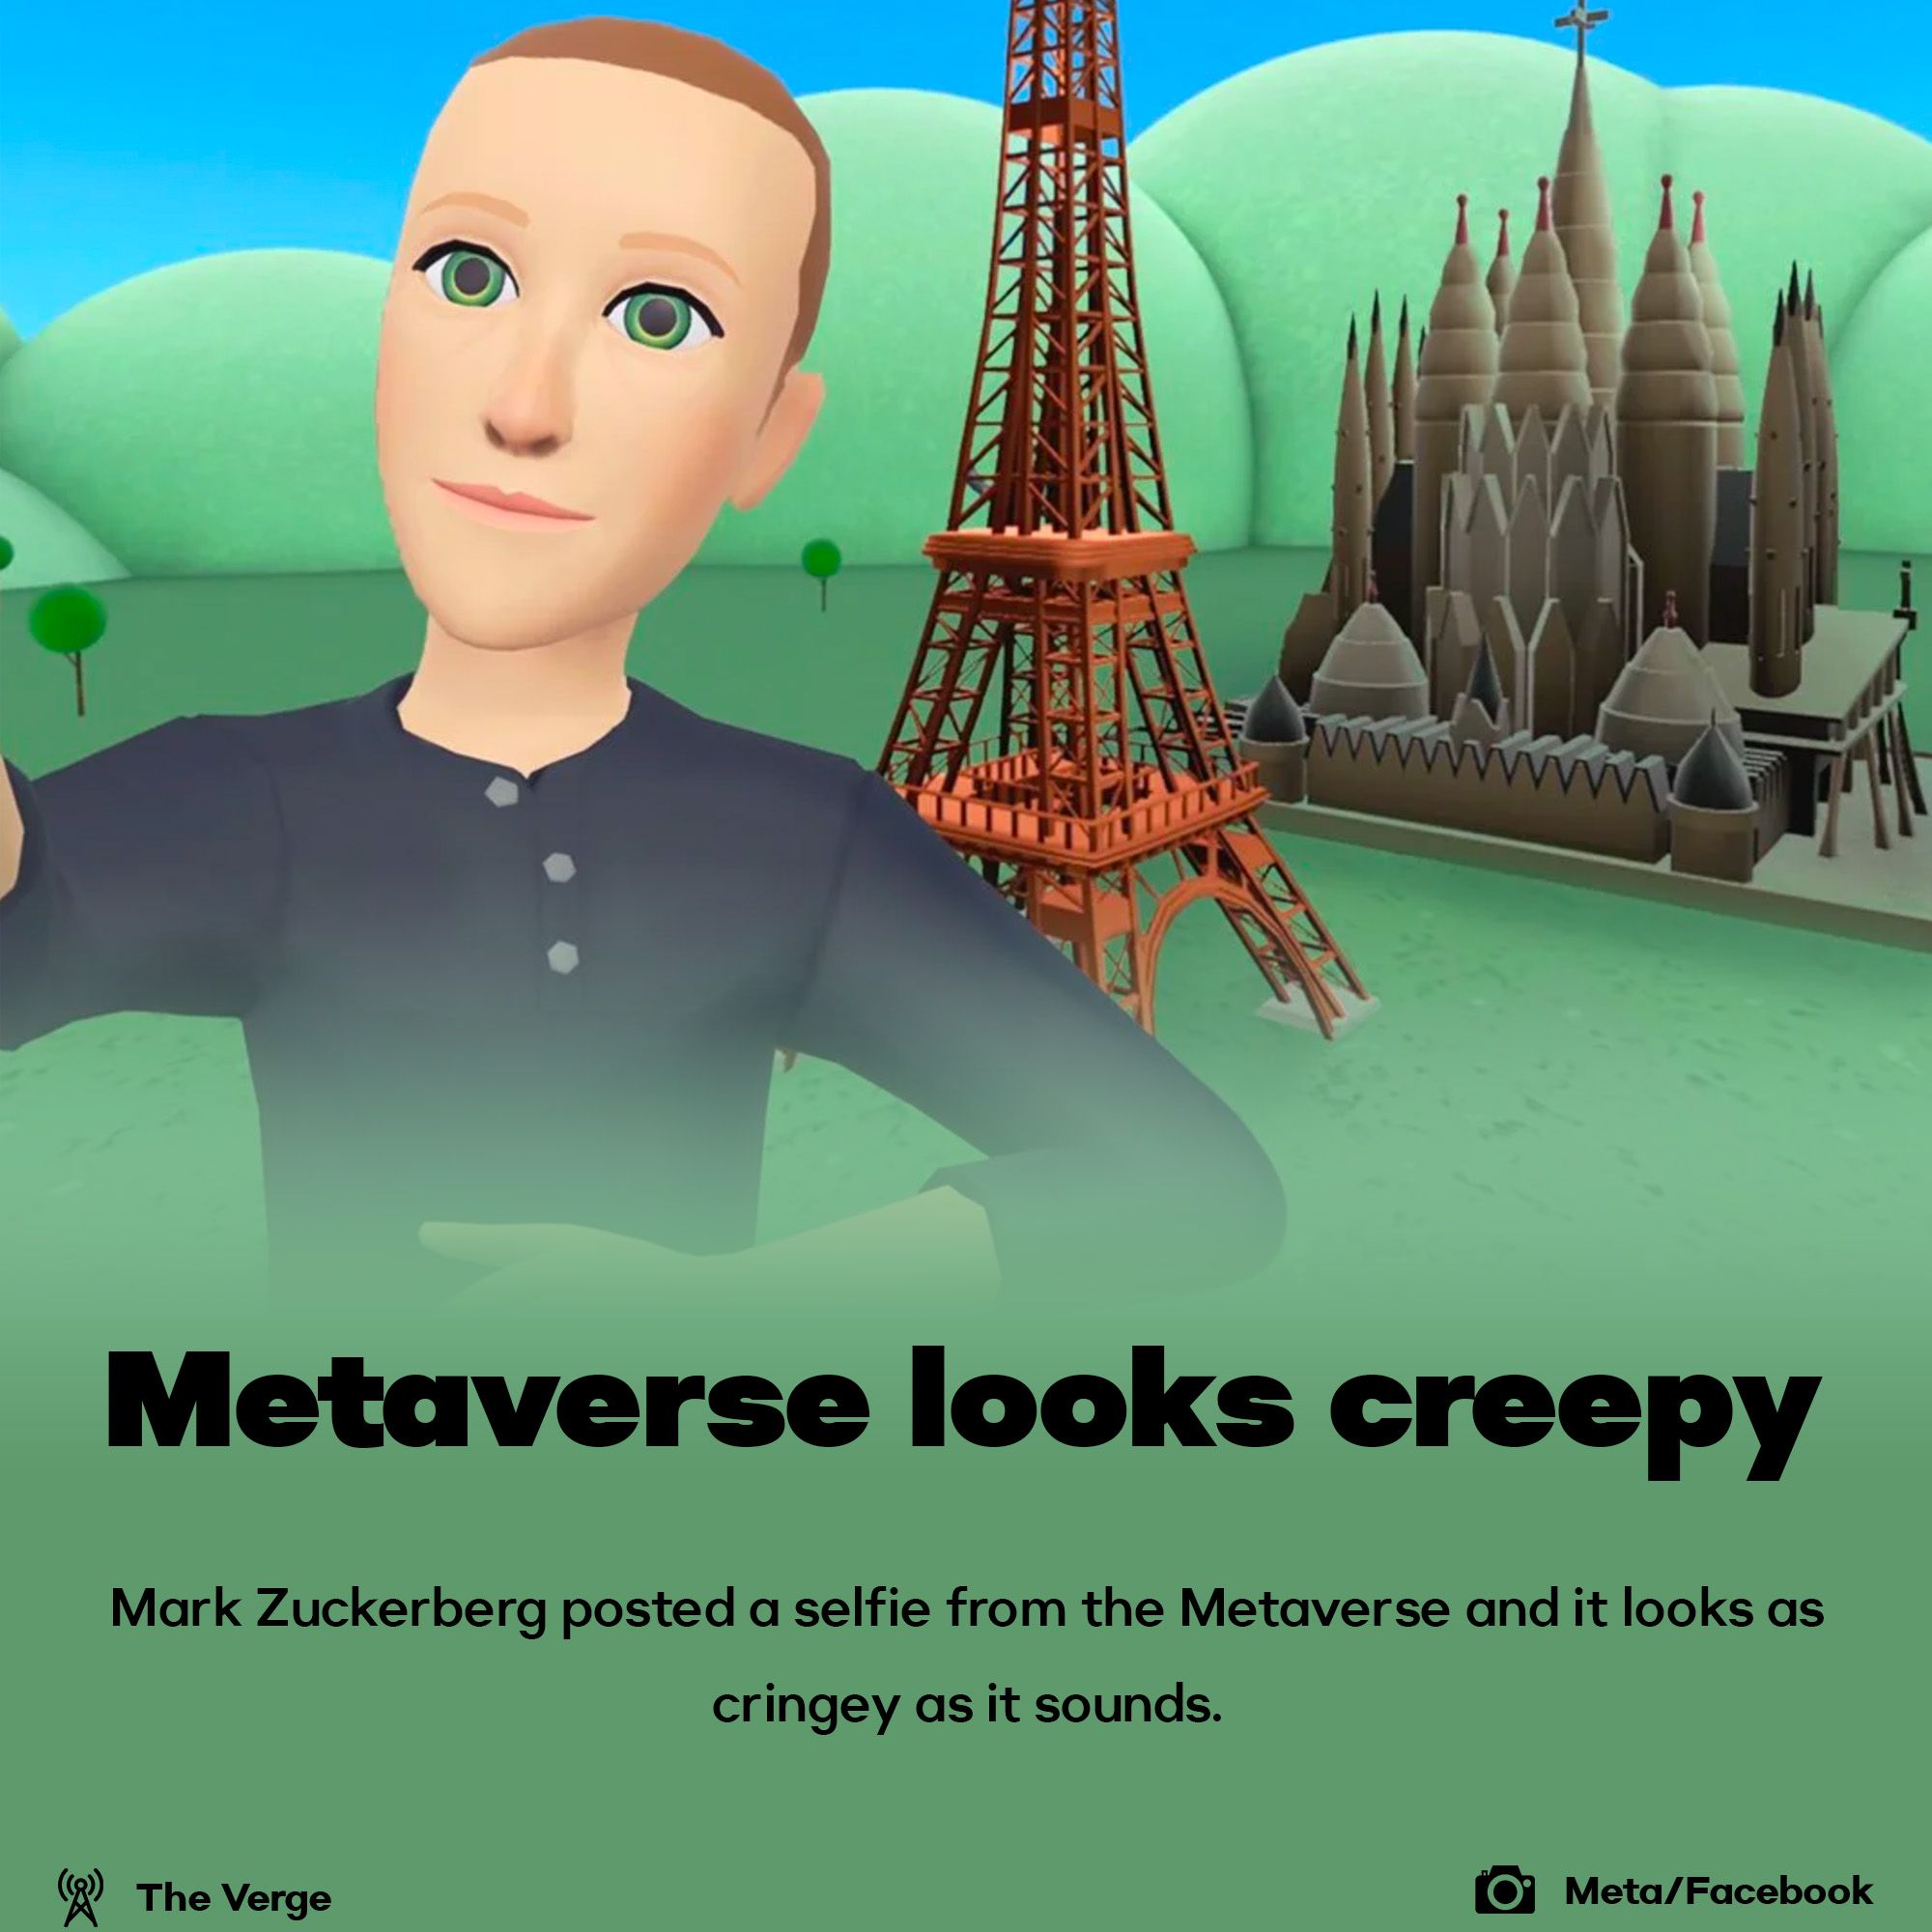 Metaverse looks creepy